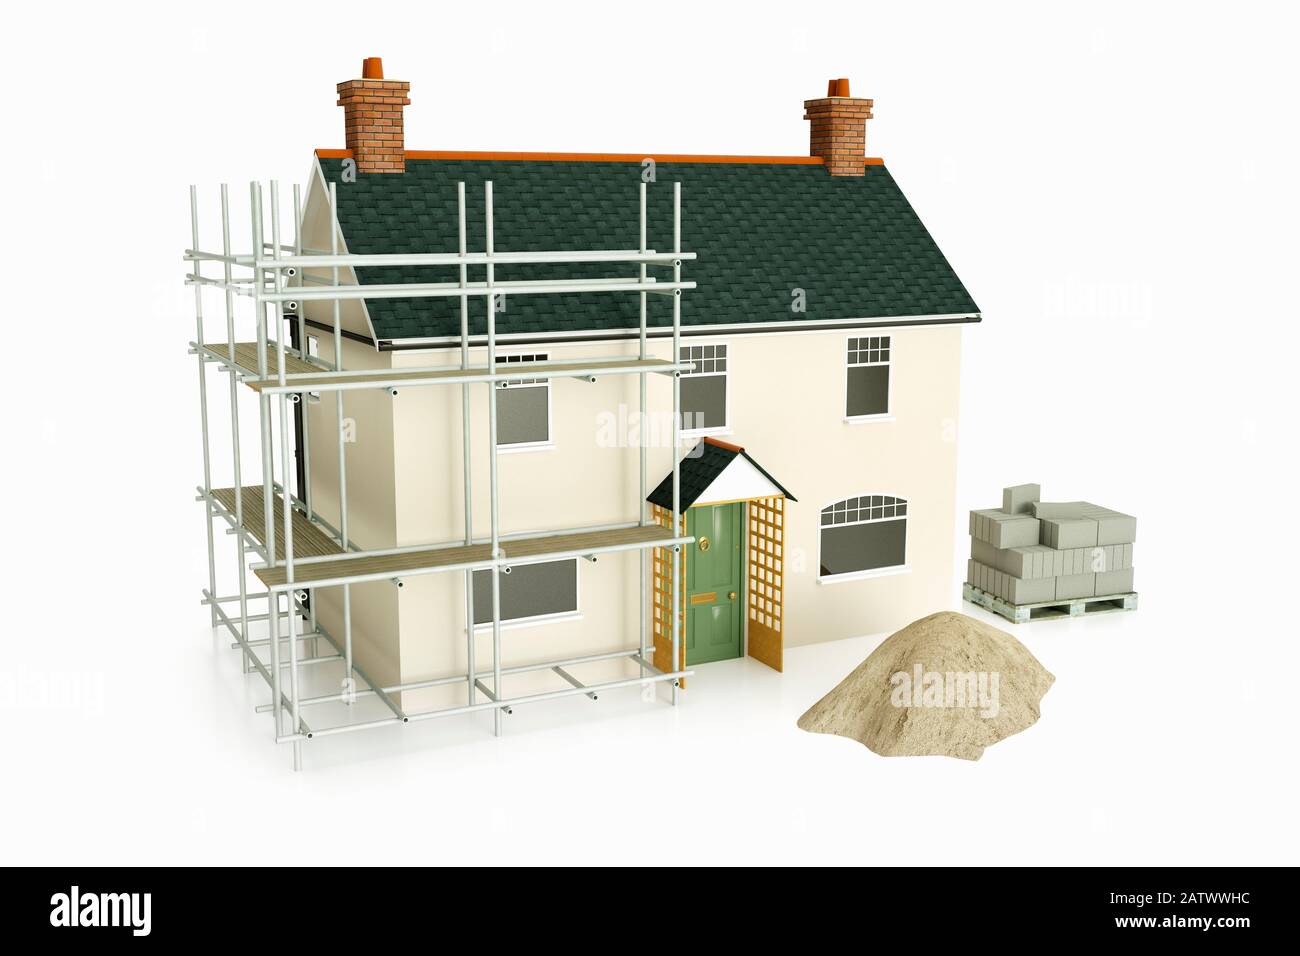 Modelo de una antigua casa unifamiliar británica tradicional con trabajos de construcción Foto de stock